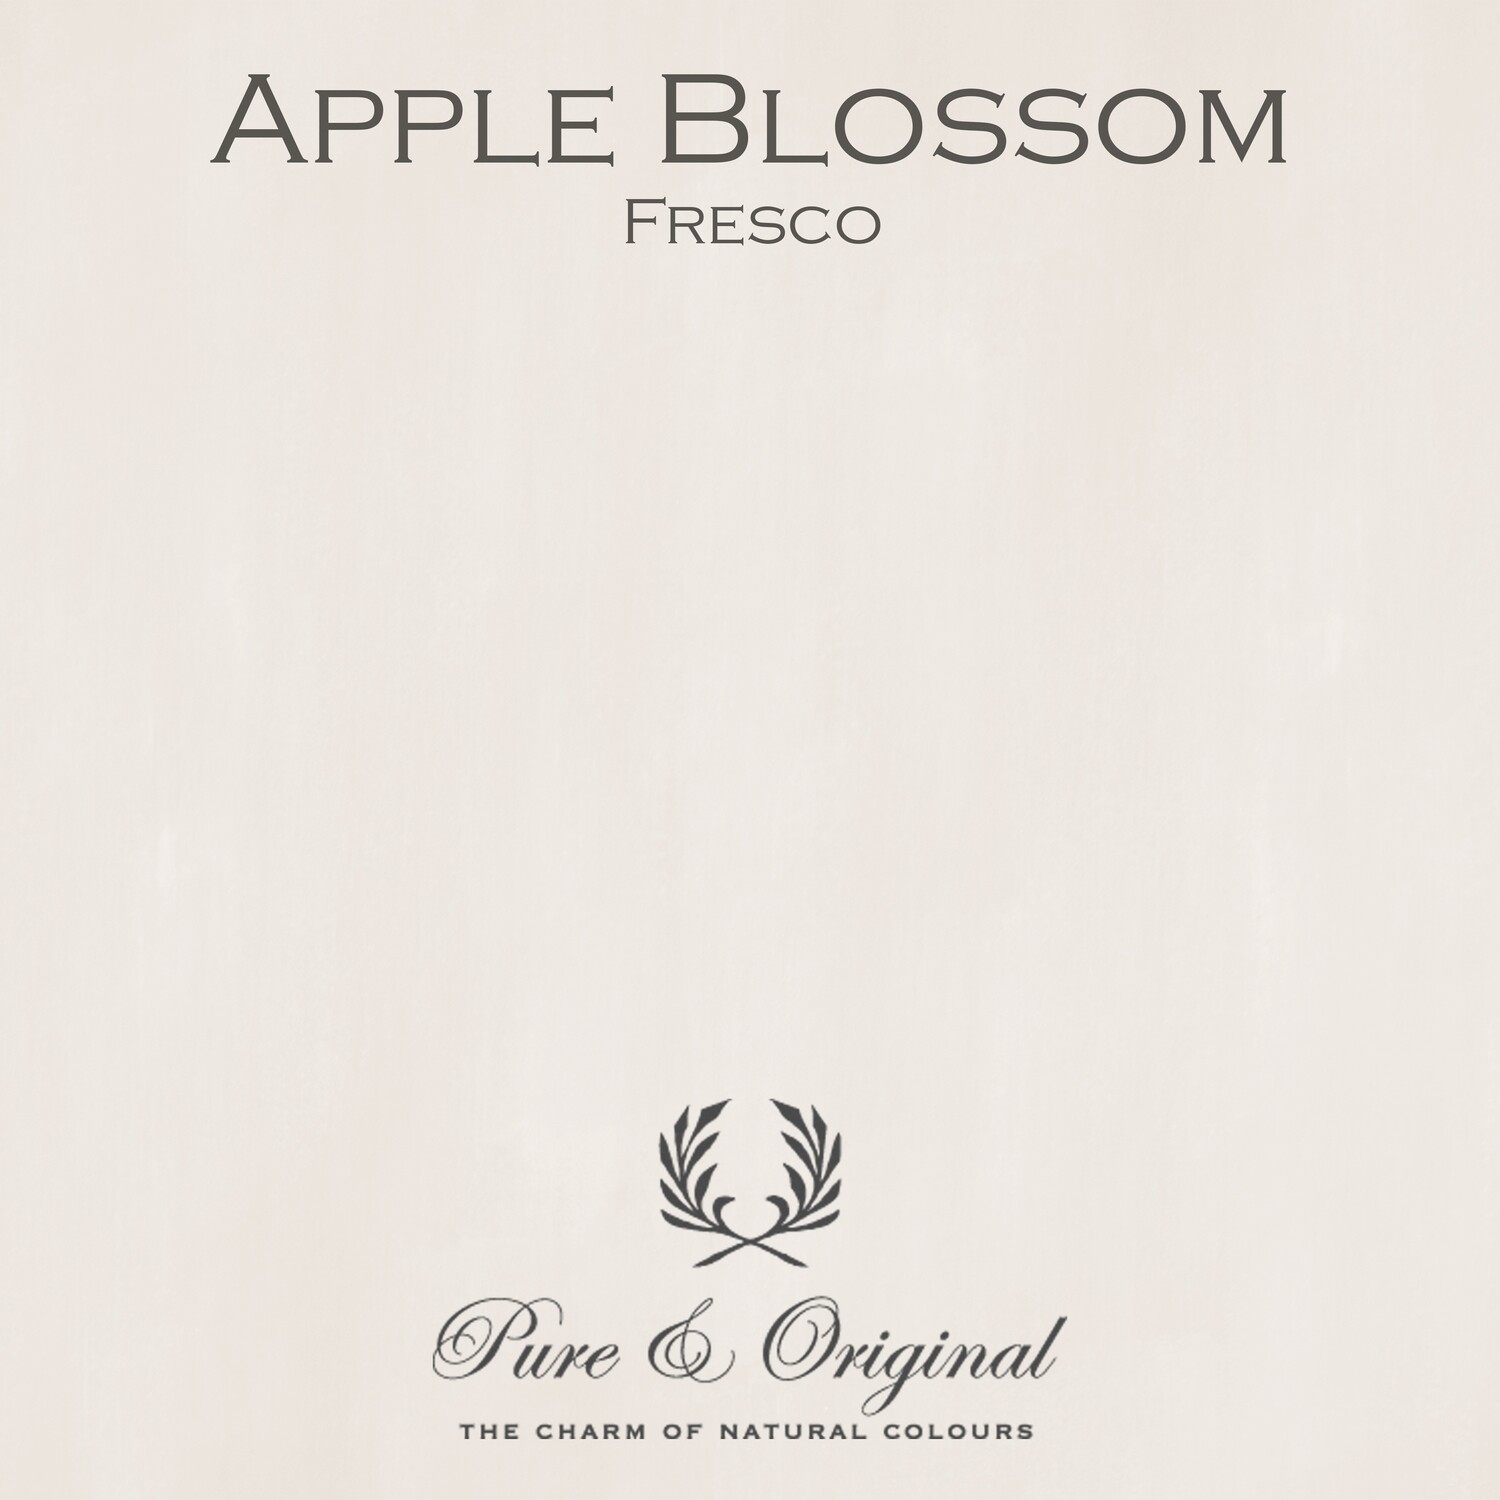 Apple Blossom Fresco